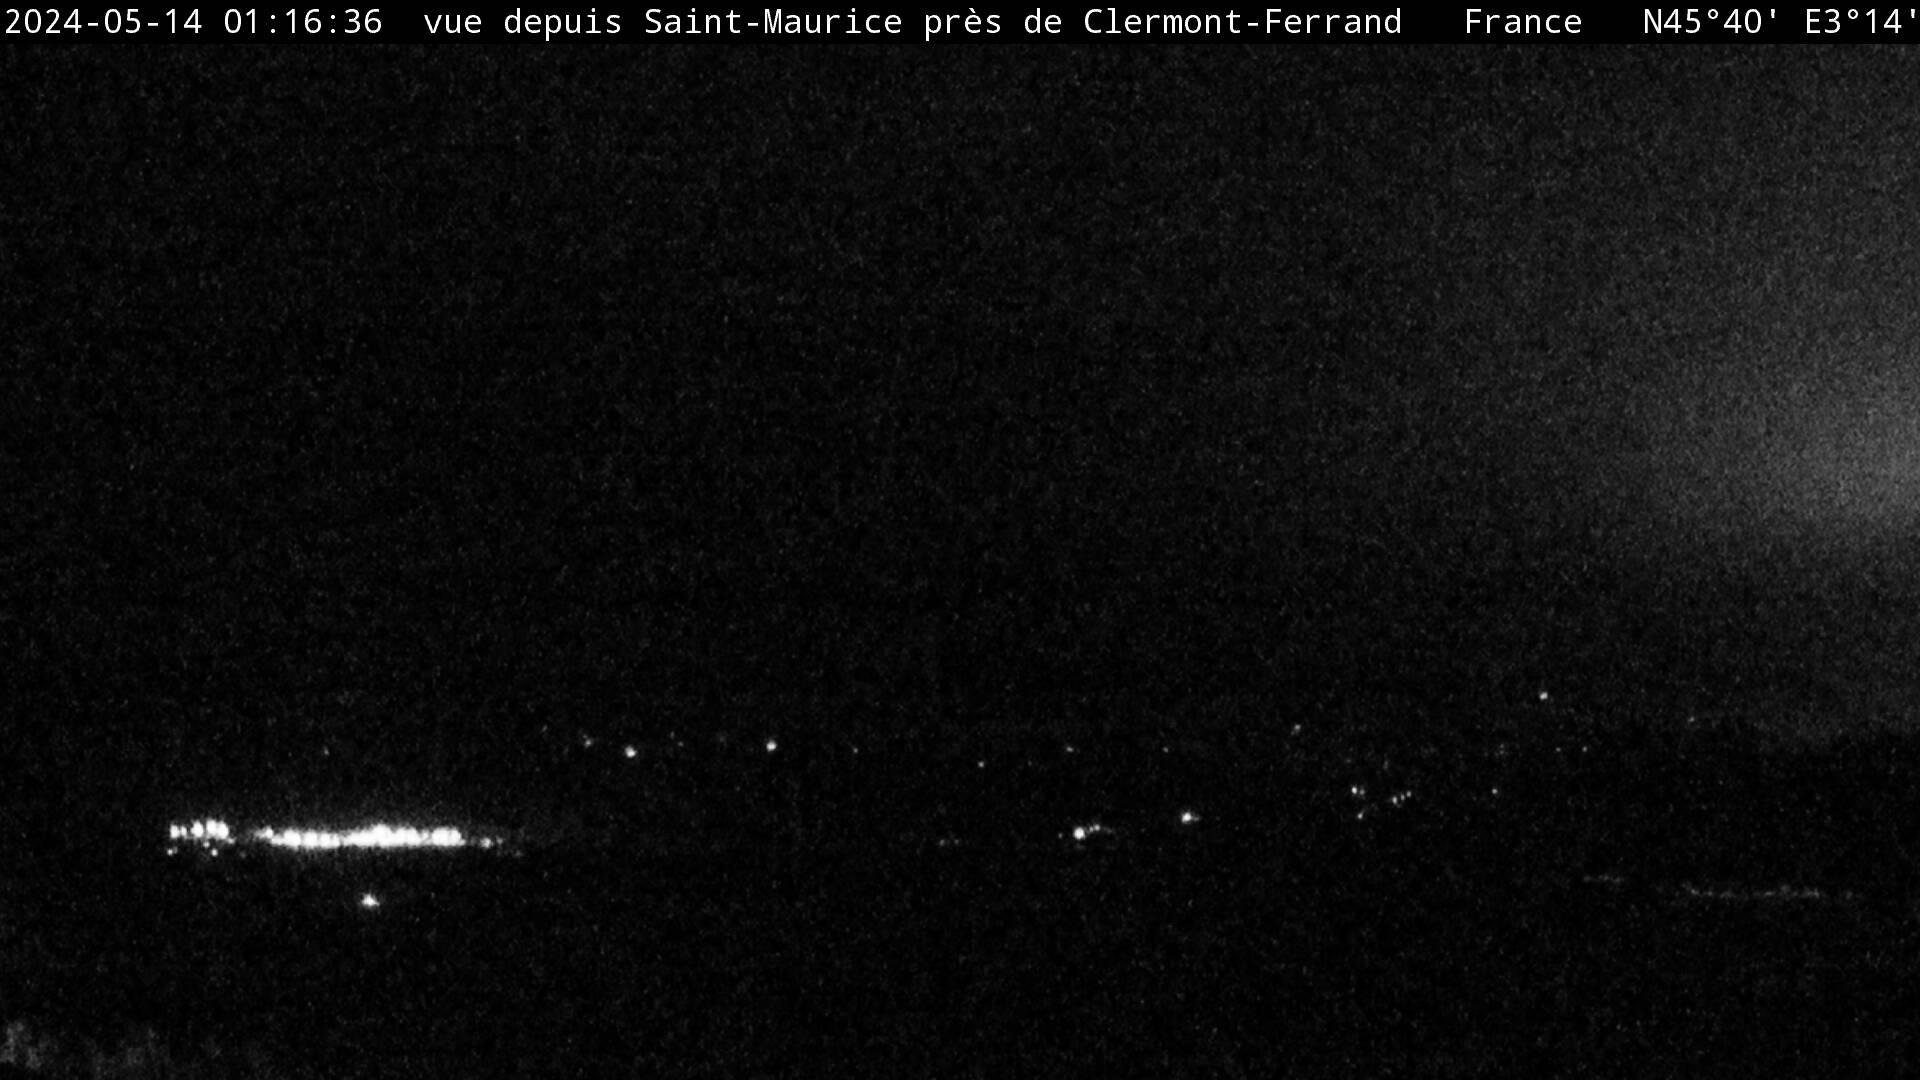 Saint-Maurice: Saint Maurice près de Clermont Ferrand